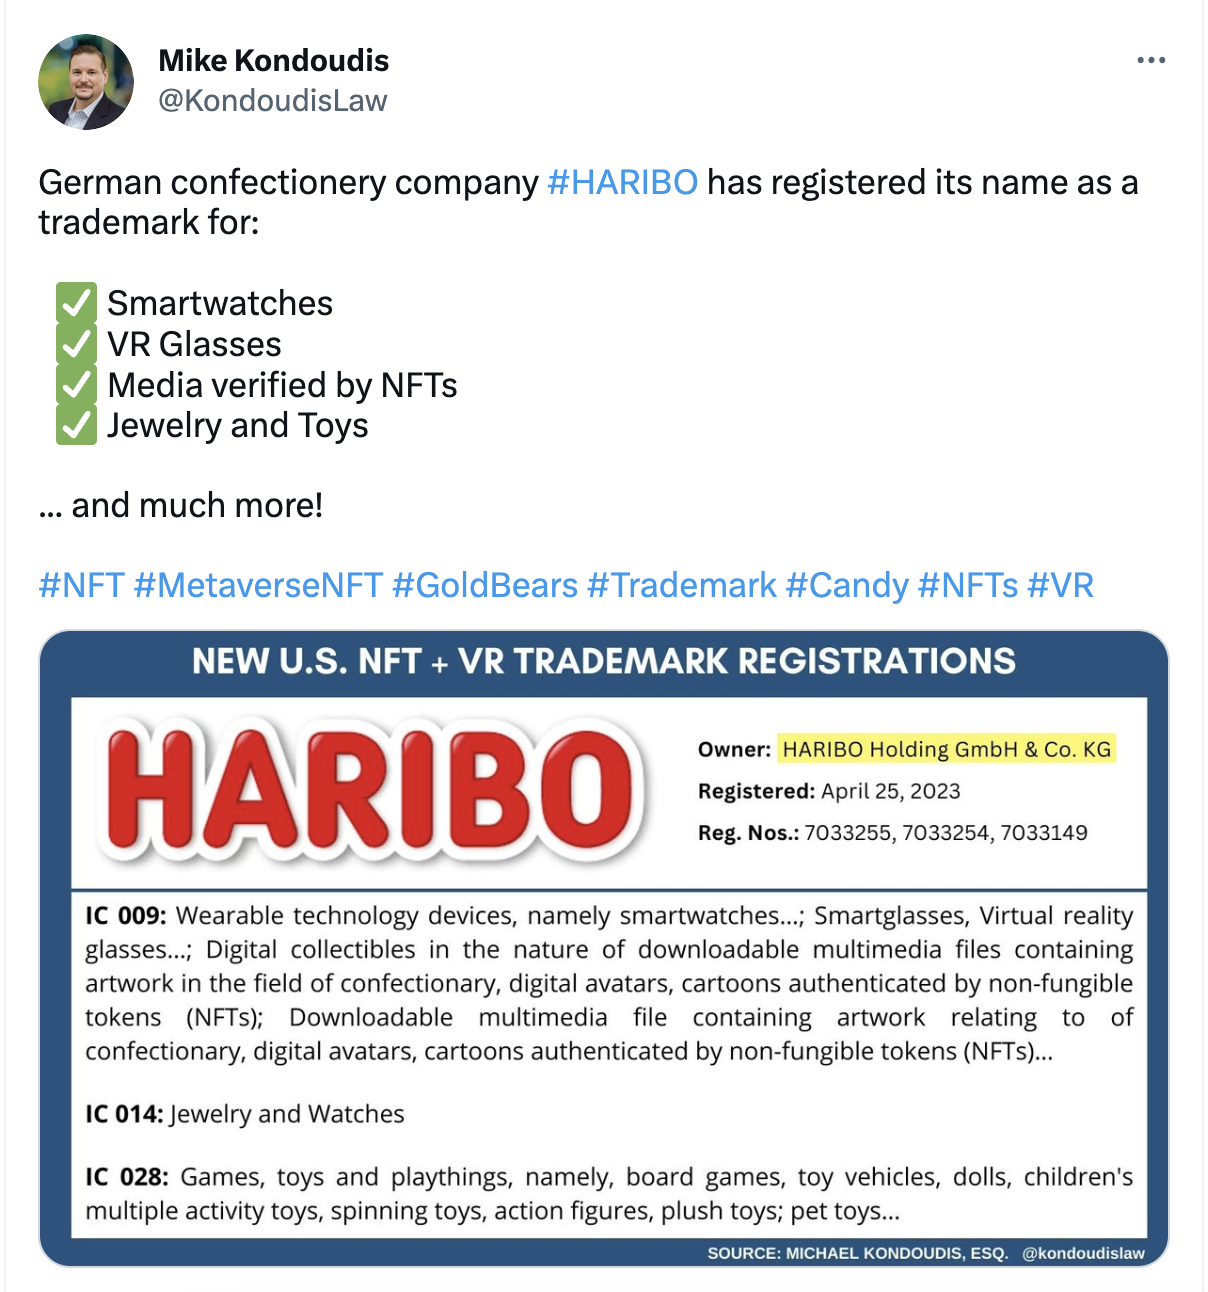 德国糖果公司 Haribo 已向美国专利商标局提交 NFT 相关商标注册申请